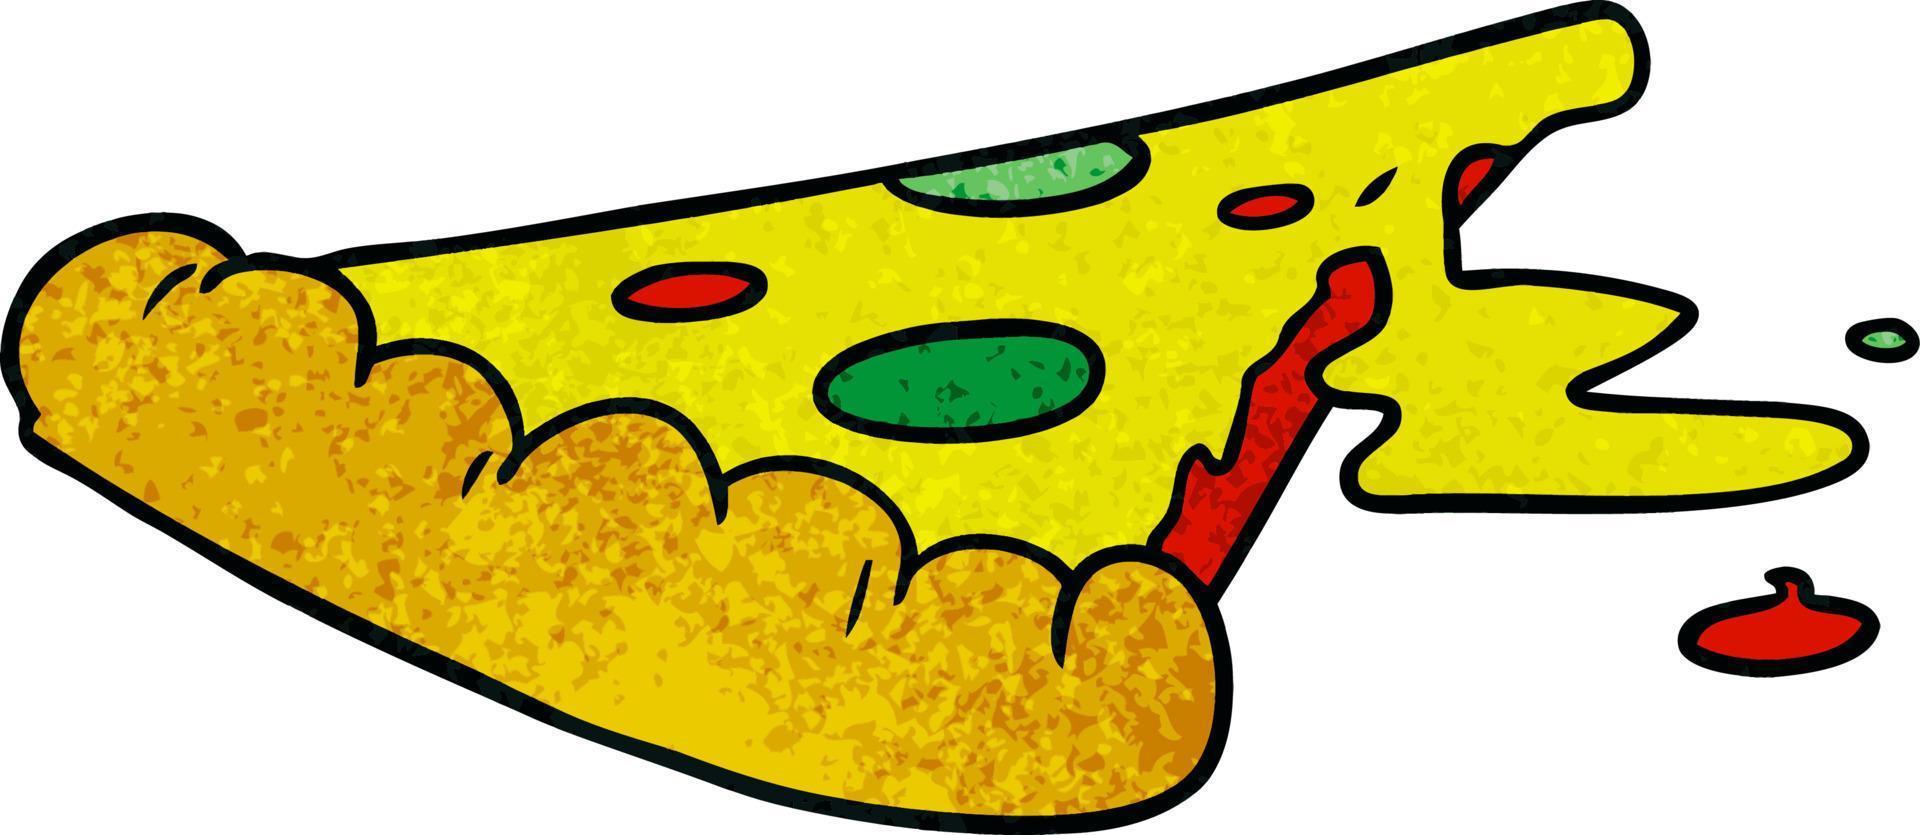 garabato de dibujos animados texturizados de una rebanada de pizza vector